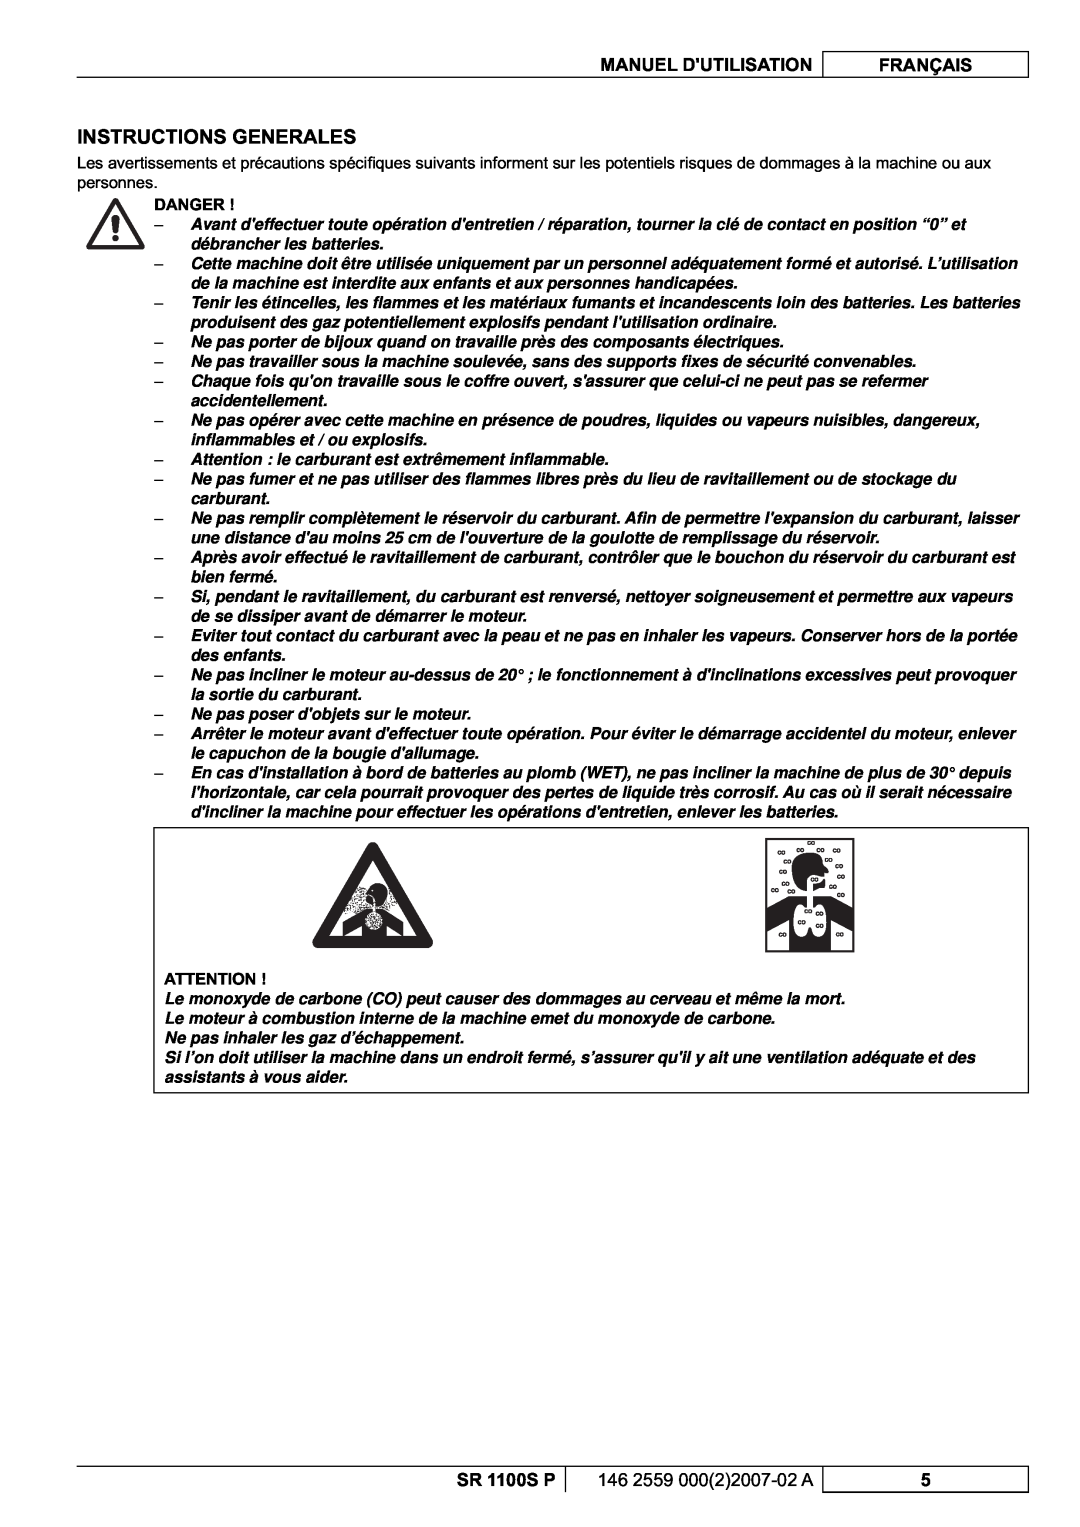 Nilfisk-Advance America Instructions Generales, Manuel Dutilisation, Français, SR 1100S P, 146 2559 00022007-02A 